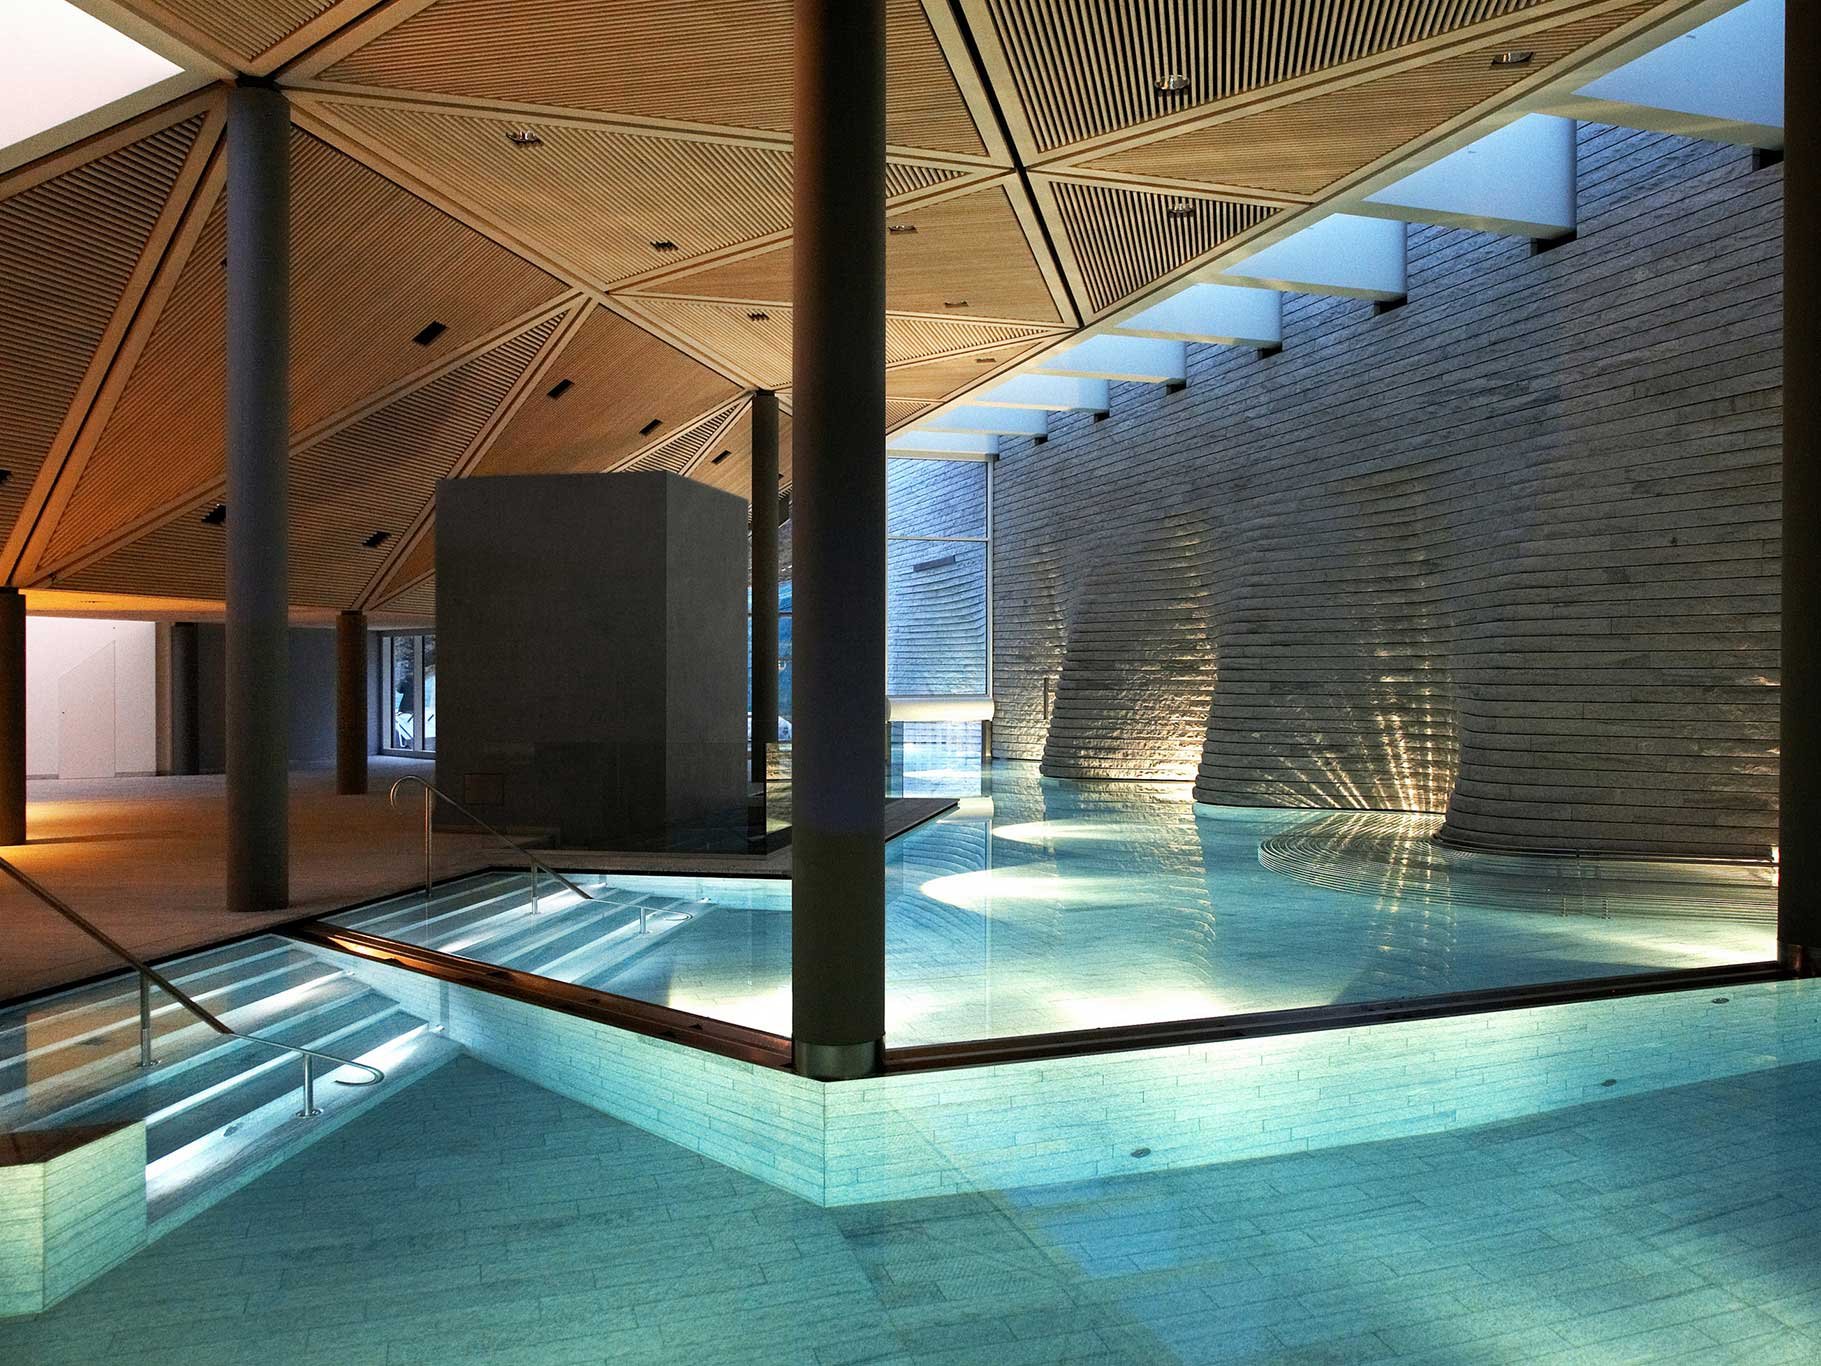 Unter den zahlreichen Nobelherbergen im Schweizer Hochgebirge ist diese eine der allerwinterlichsten – von den kristallinen Glastürmen des von Architekt Mario Botta entworfenen 5000-Quadratmeter-Spas bis zur hoteleigenen Bergbahn. tschuggen.ch